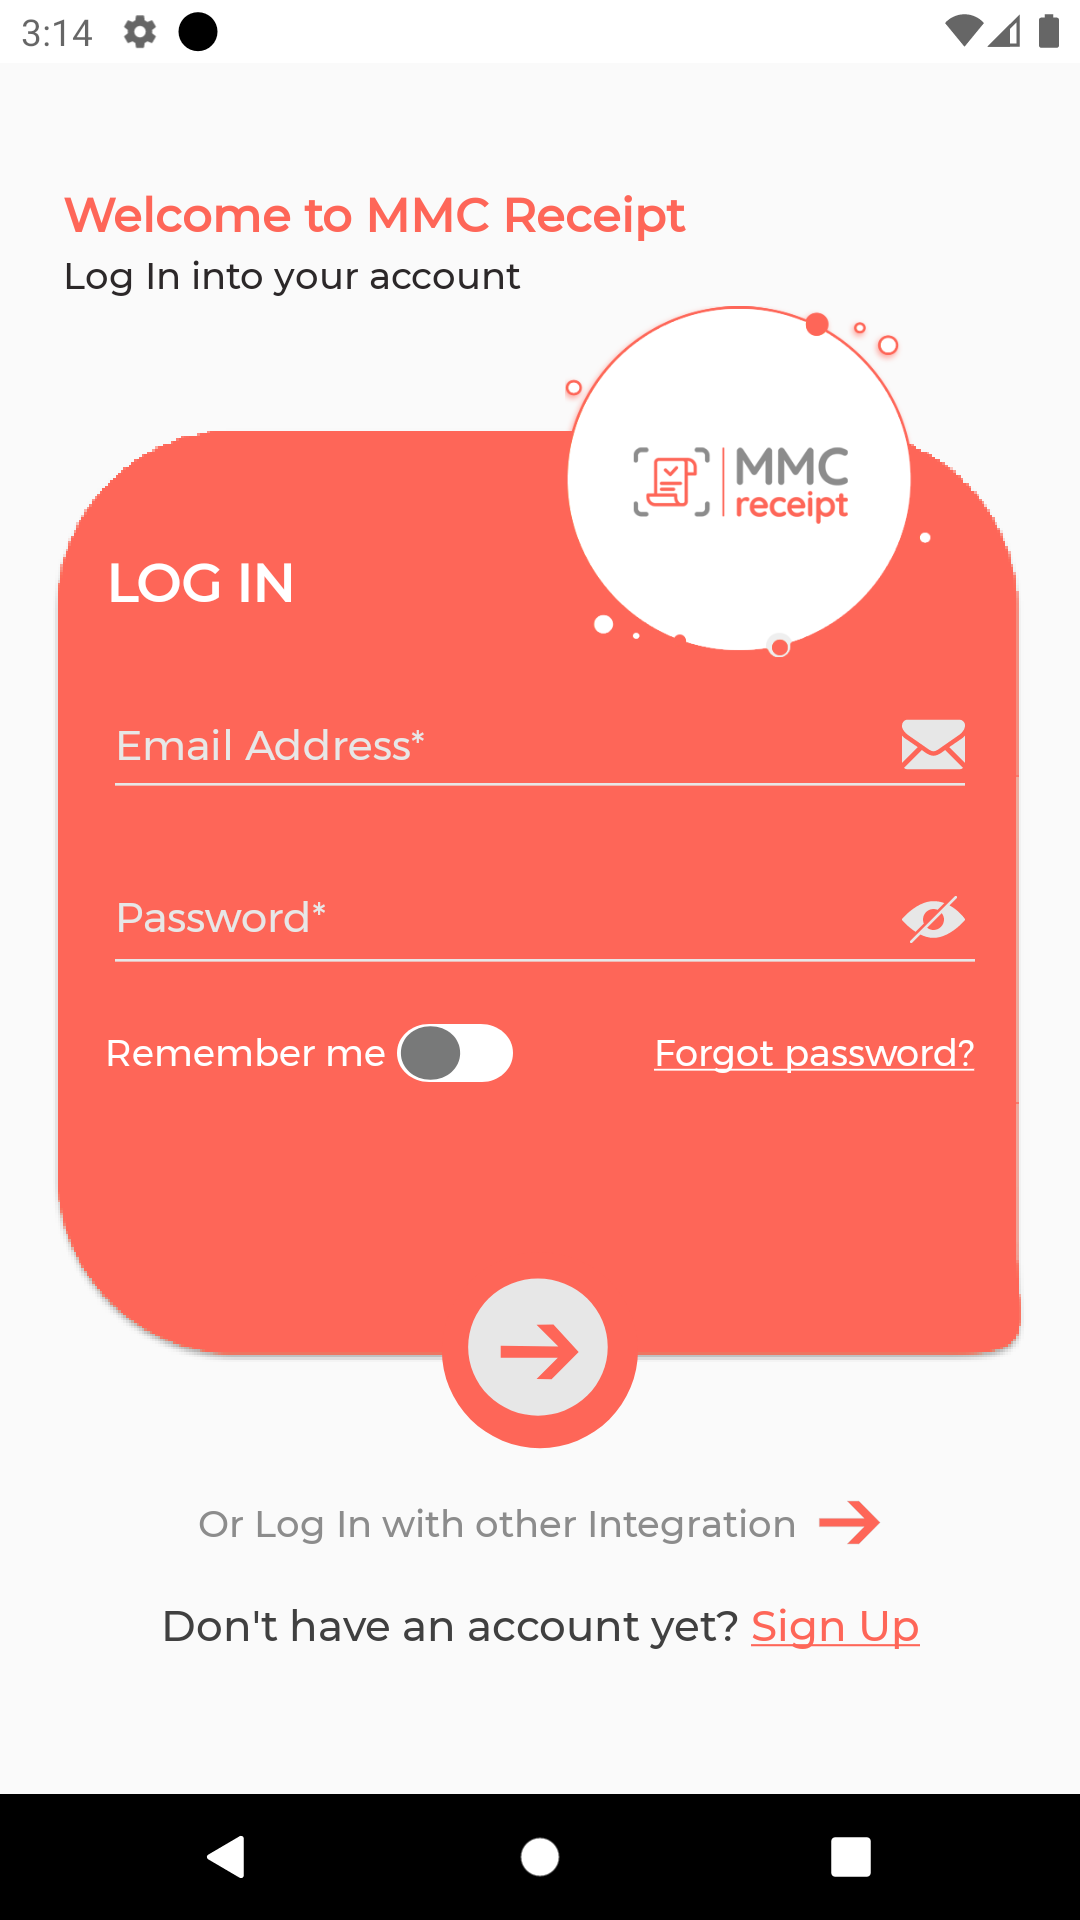 MMC Receipt - Login page